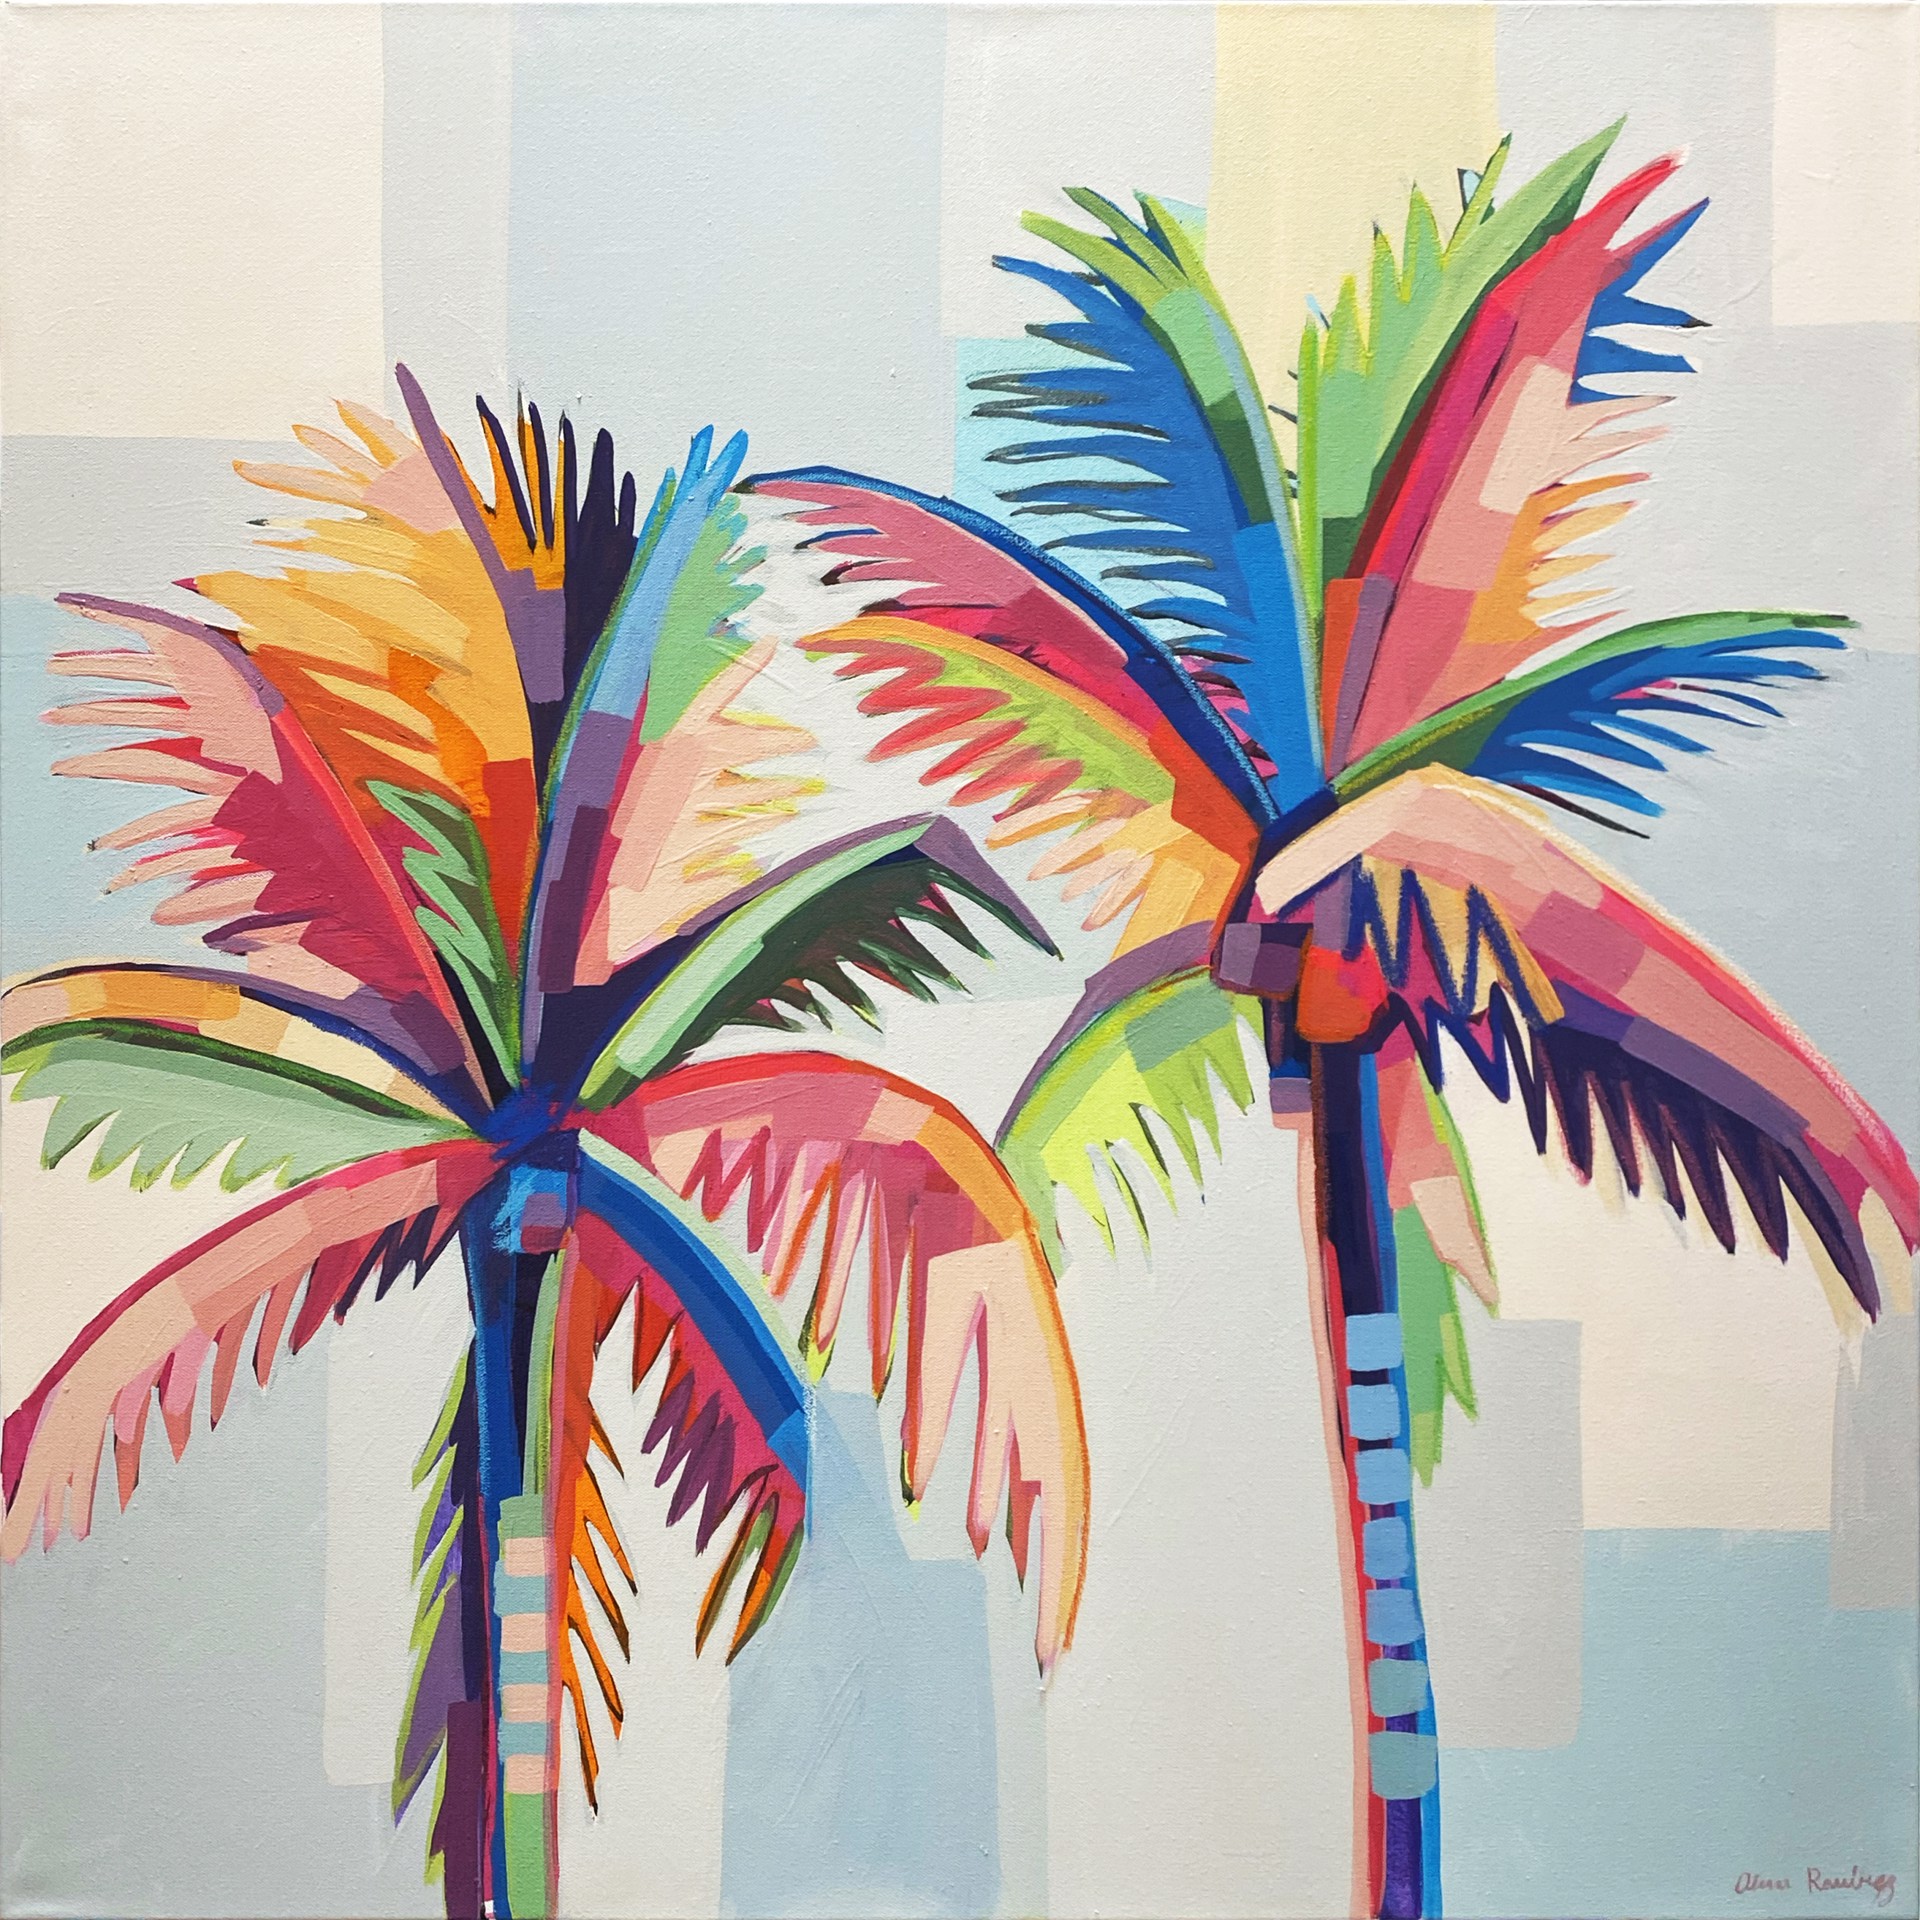 Wind and Palms by Alma Ramirez